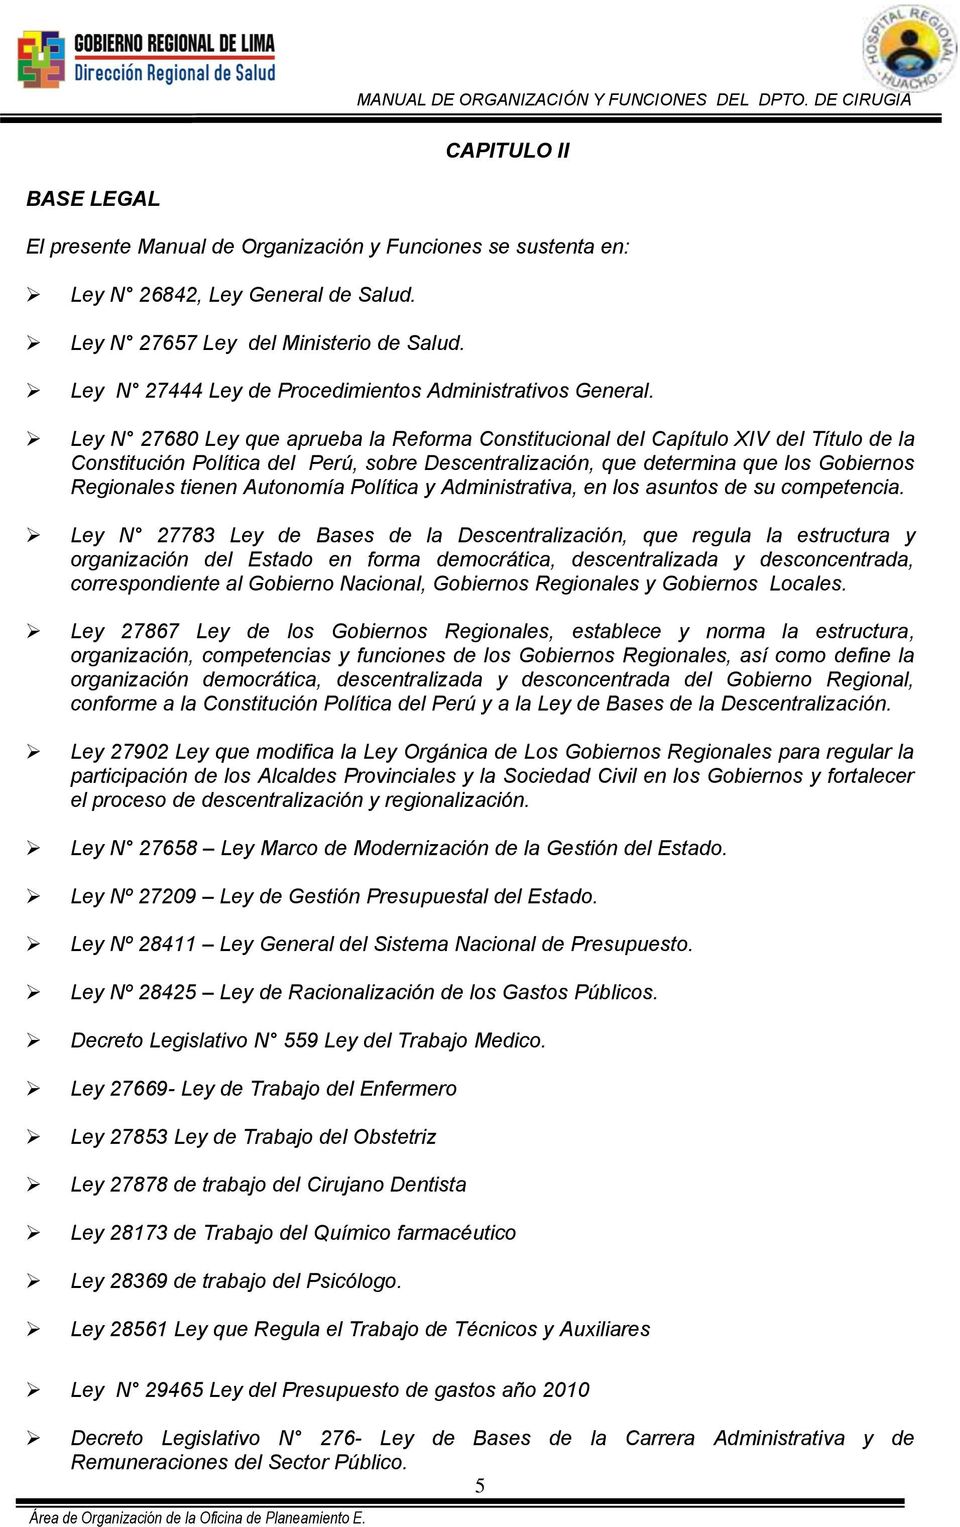 Ley N 27680 Ley que aprueba la Reforma Constitucional del Capítulo XIV del Título de la Constitución Política del Perú, sobre Descentralización, que determina que los Gobiernos Regionales tienen